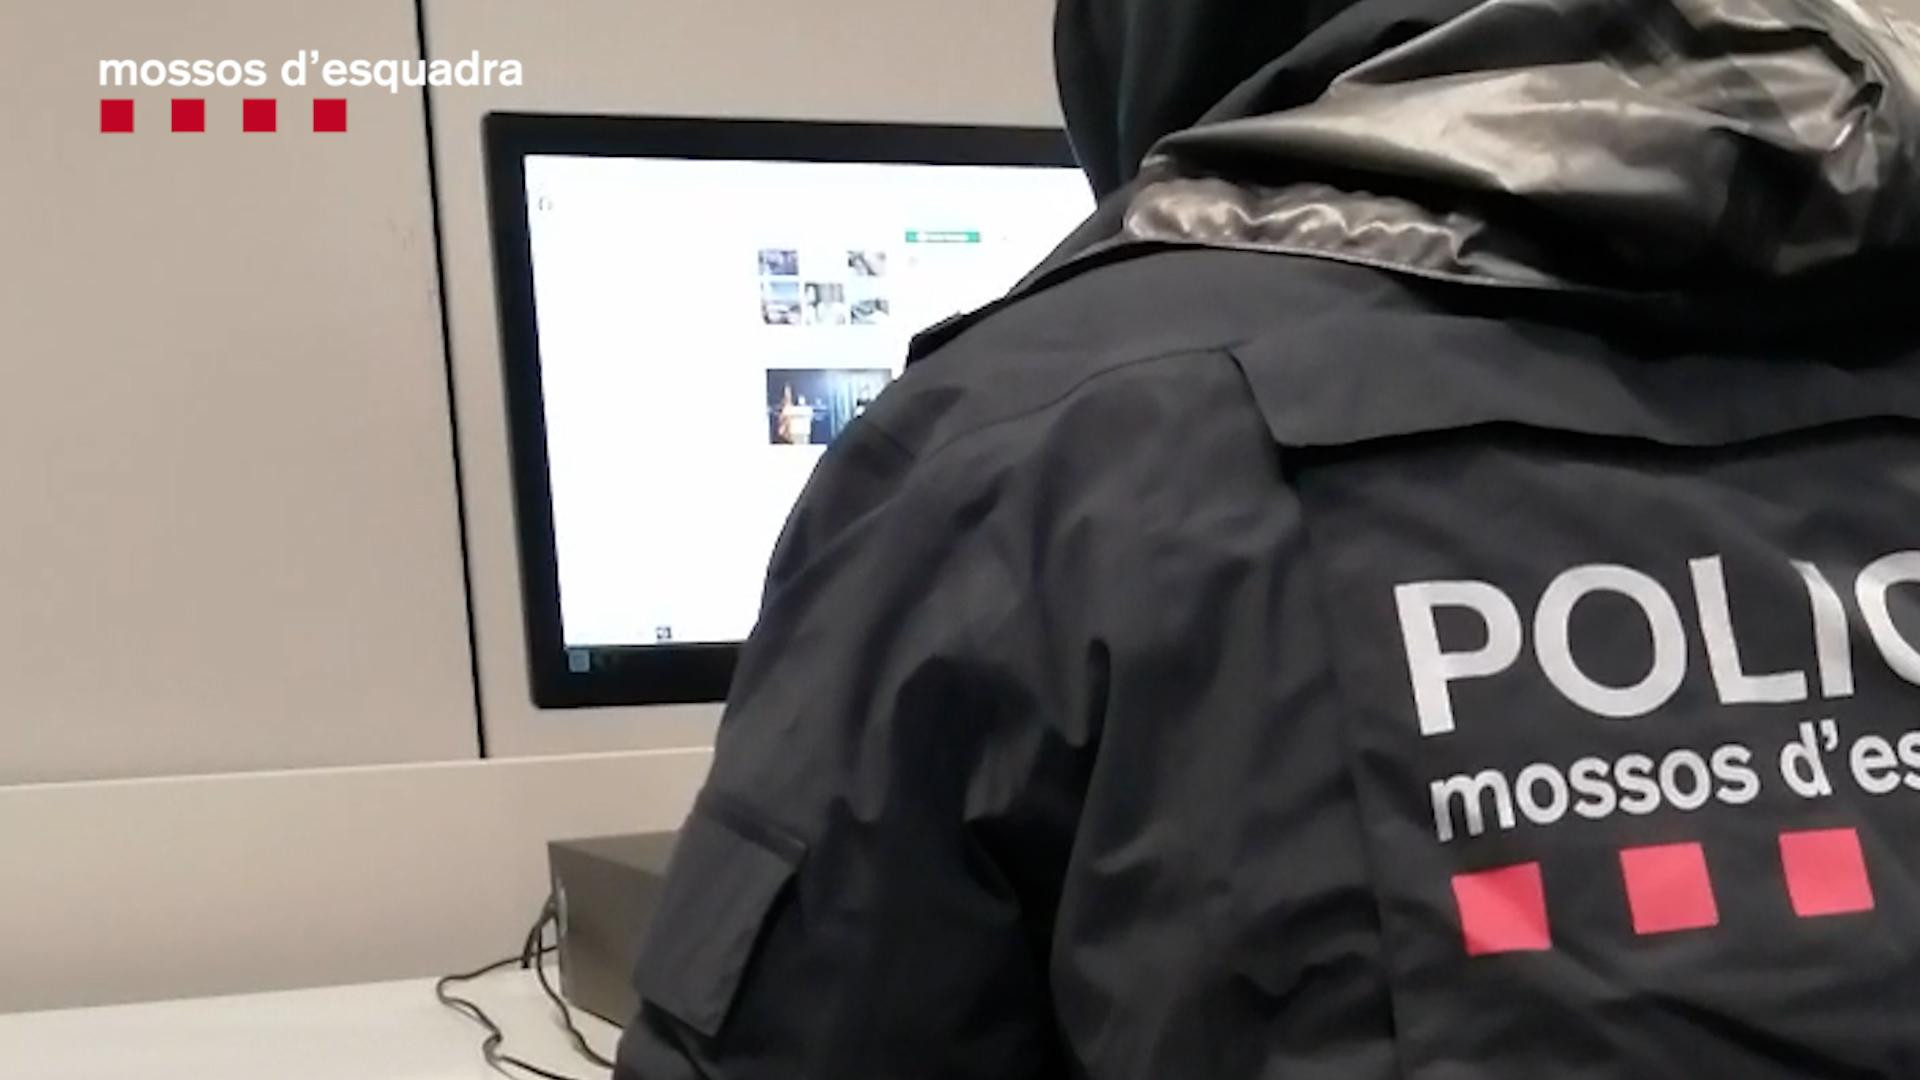 Un agente investiga las redes en busca de mensajes de tono yihadista / MOSSOS